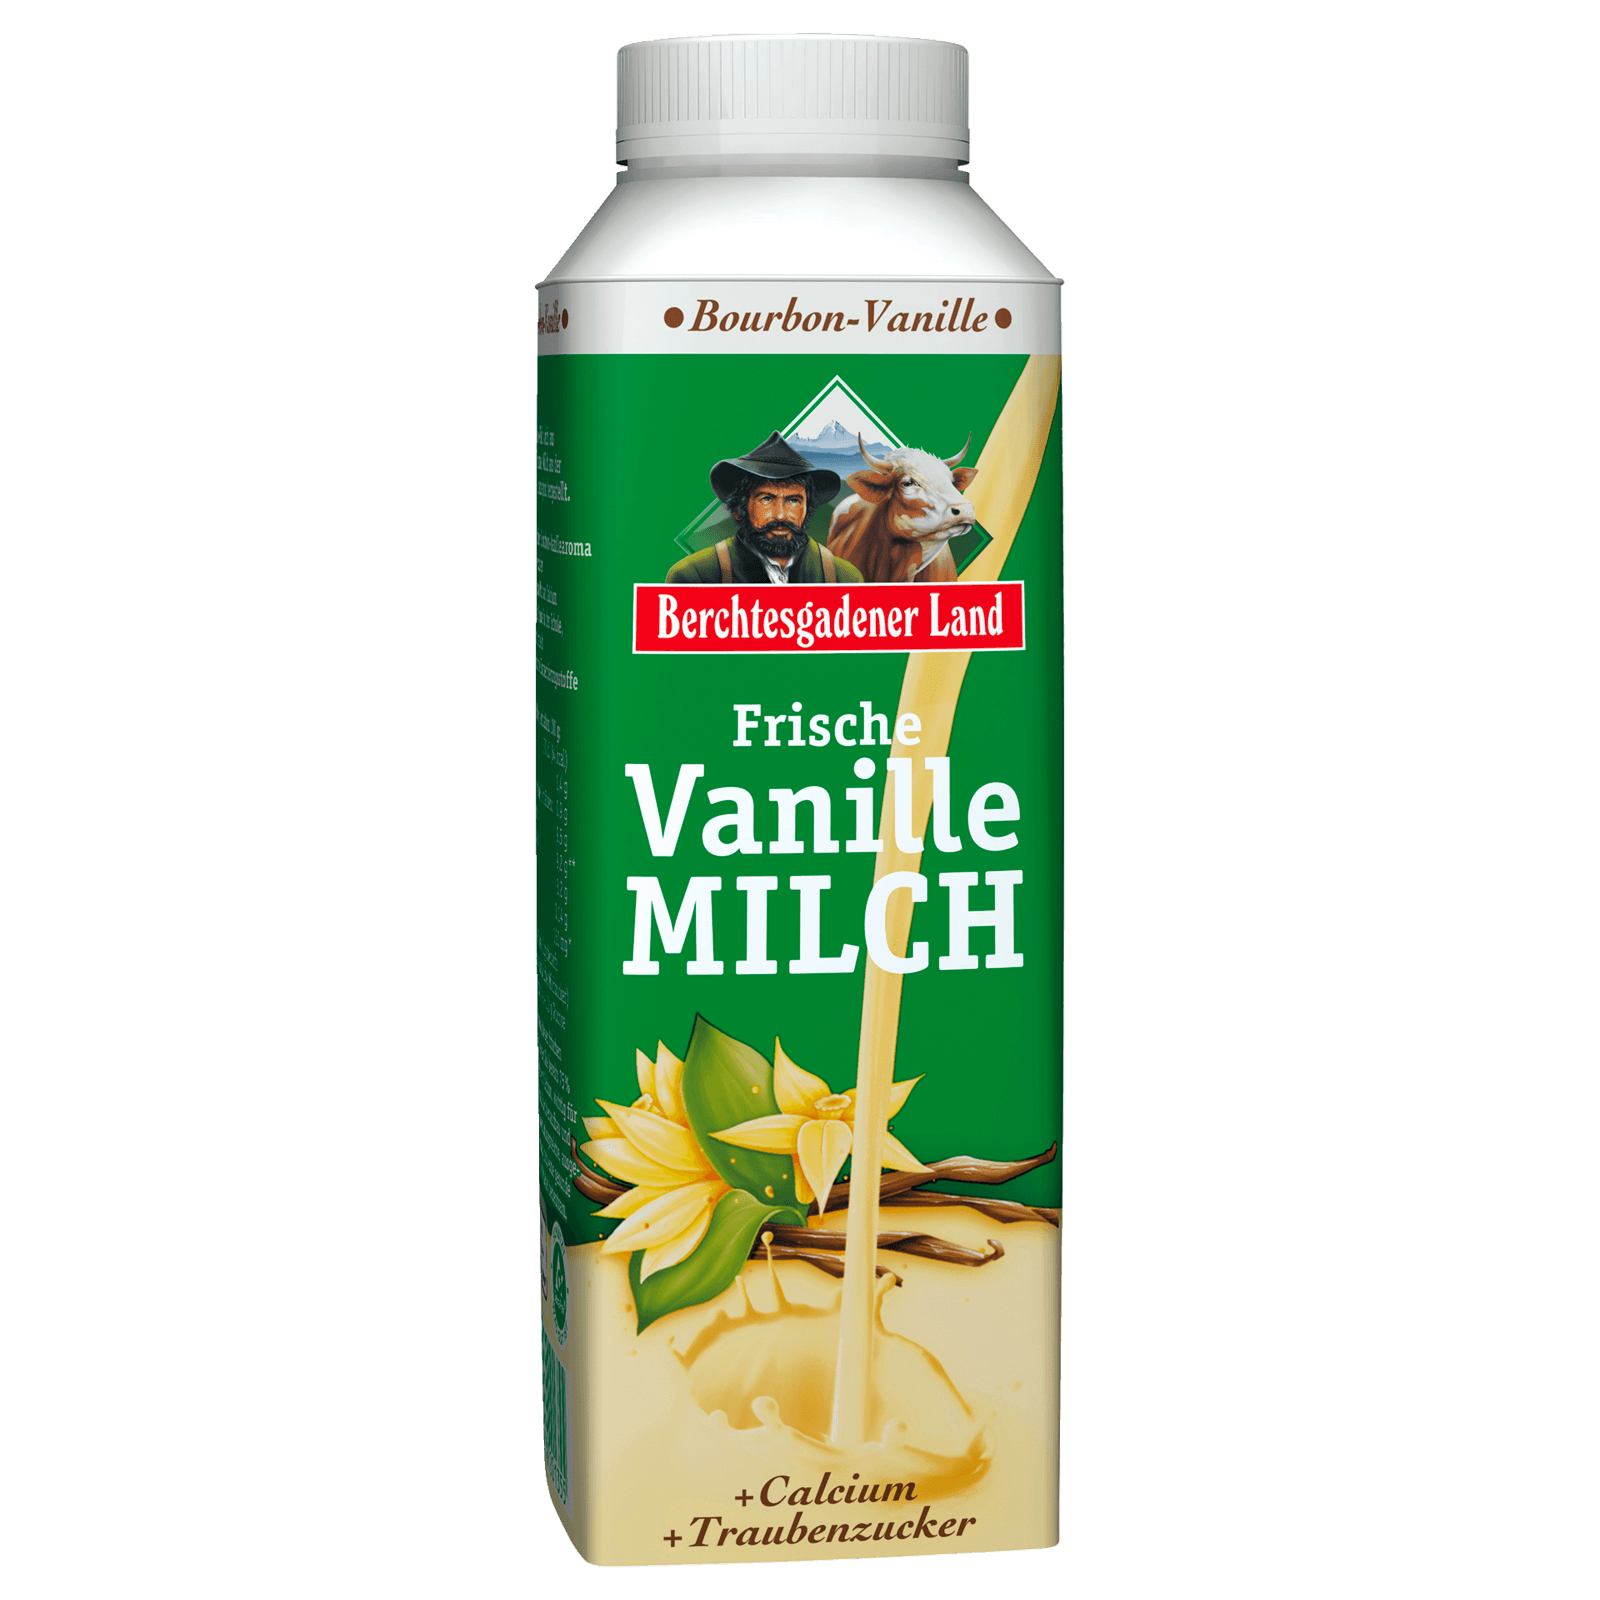 Berchtesgadener Land Frische Vanille-Milch 400g bei REWE online bestellen!